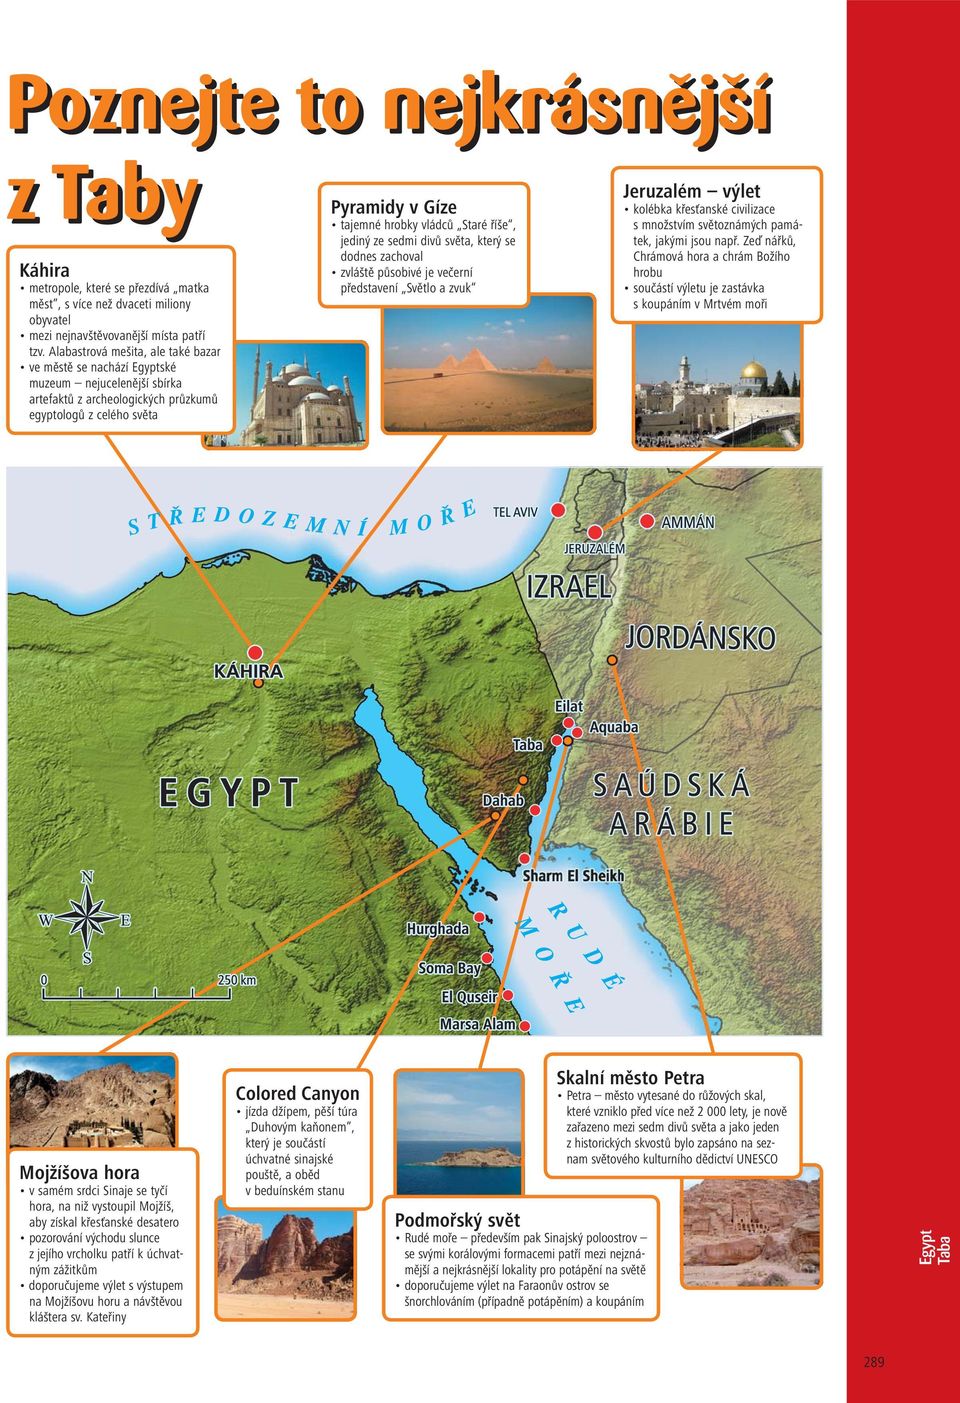 hora v samém srdci Sinaje se tyčí hora, na niž vystoupil Mojžíš, aby získal křesťanské desatero pozorování východu slunce z jejího vrcholku patří k úchvatným zážitkům doporučujeme výlet s výstupem na